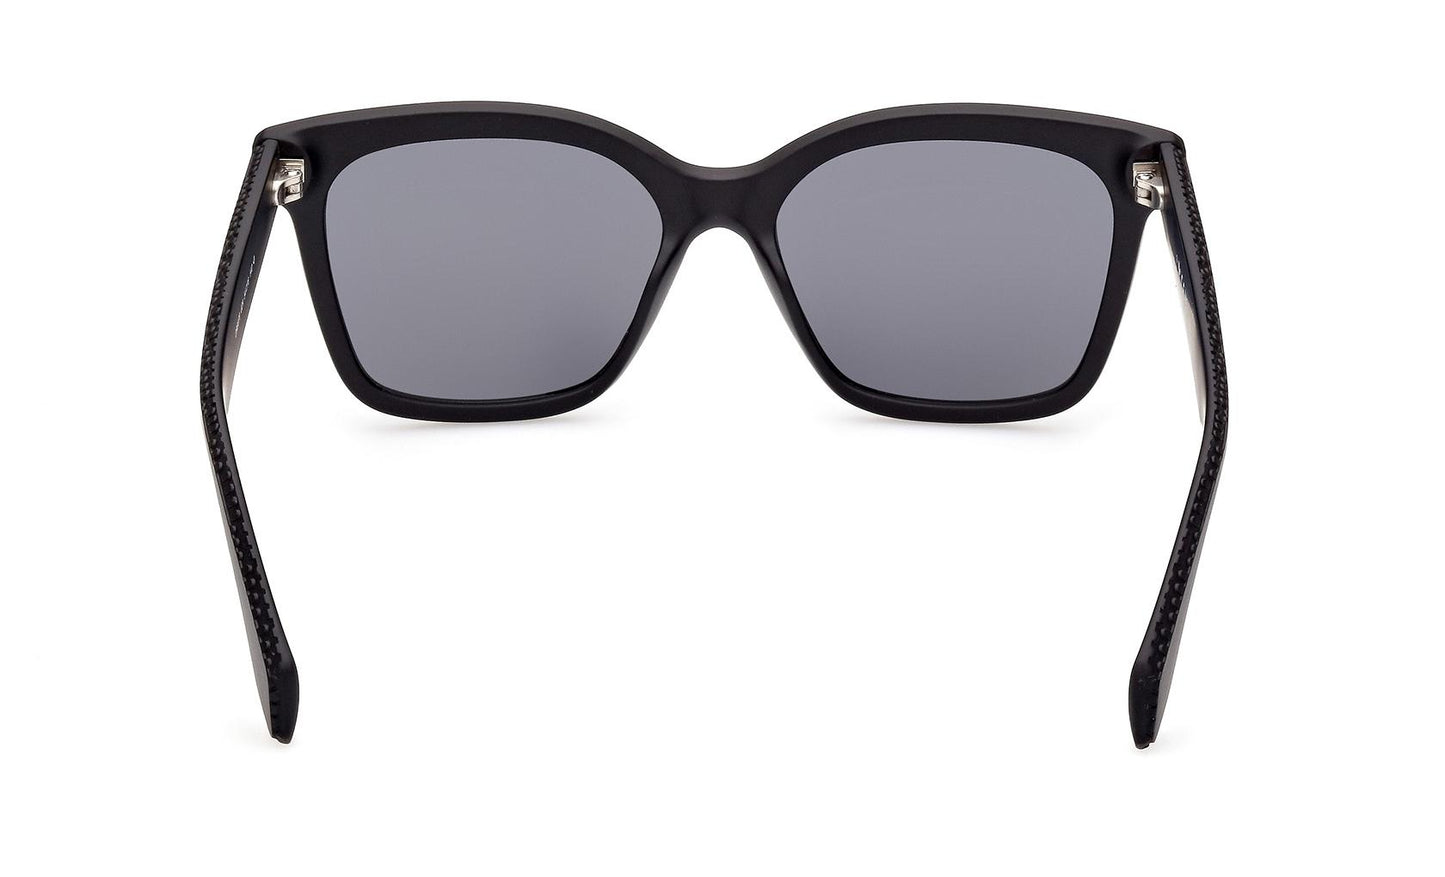 Adidas Originals Sunglasses OR0070 02A